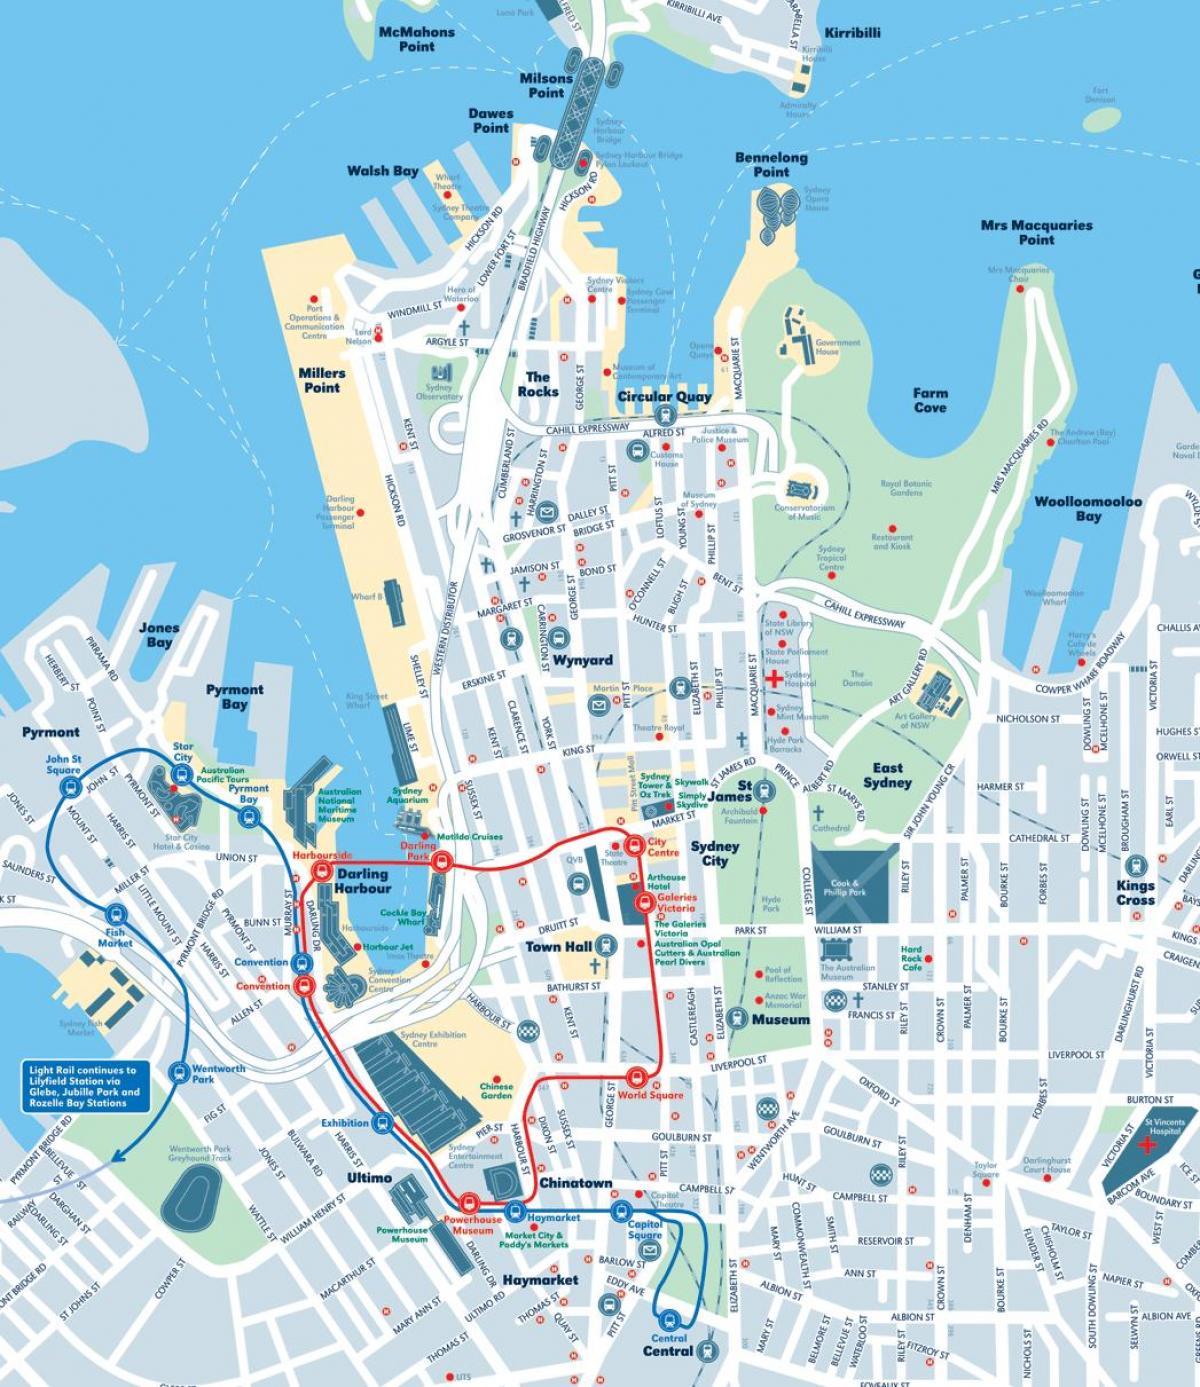 mapa de la ciudad de sydney